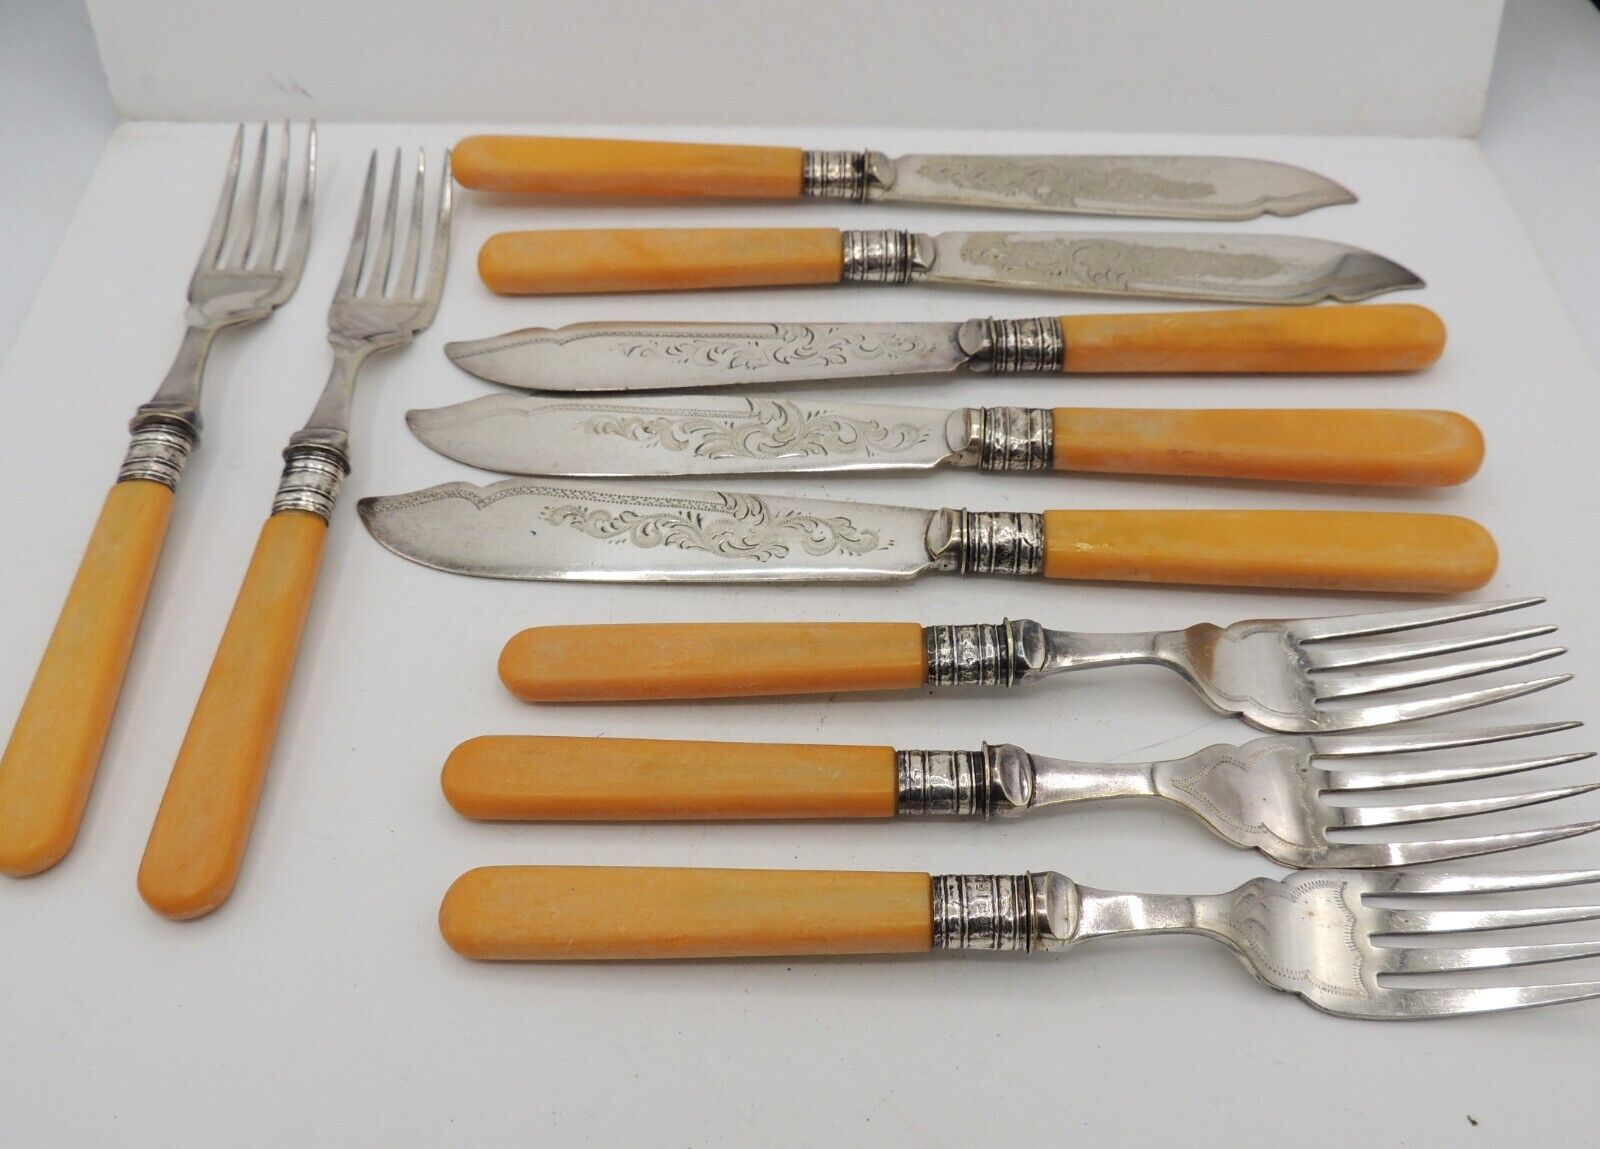 JH Potter Fish Knives Forks Ornate Blades Sterling Bands Sheffield England 1906